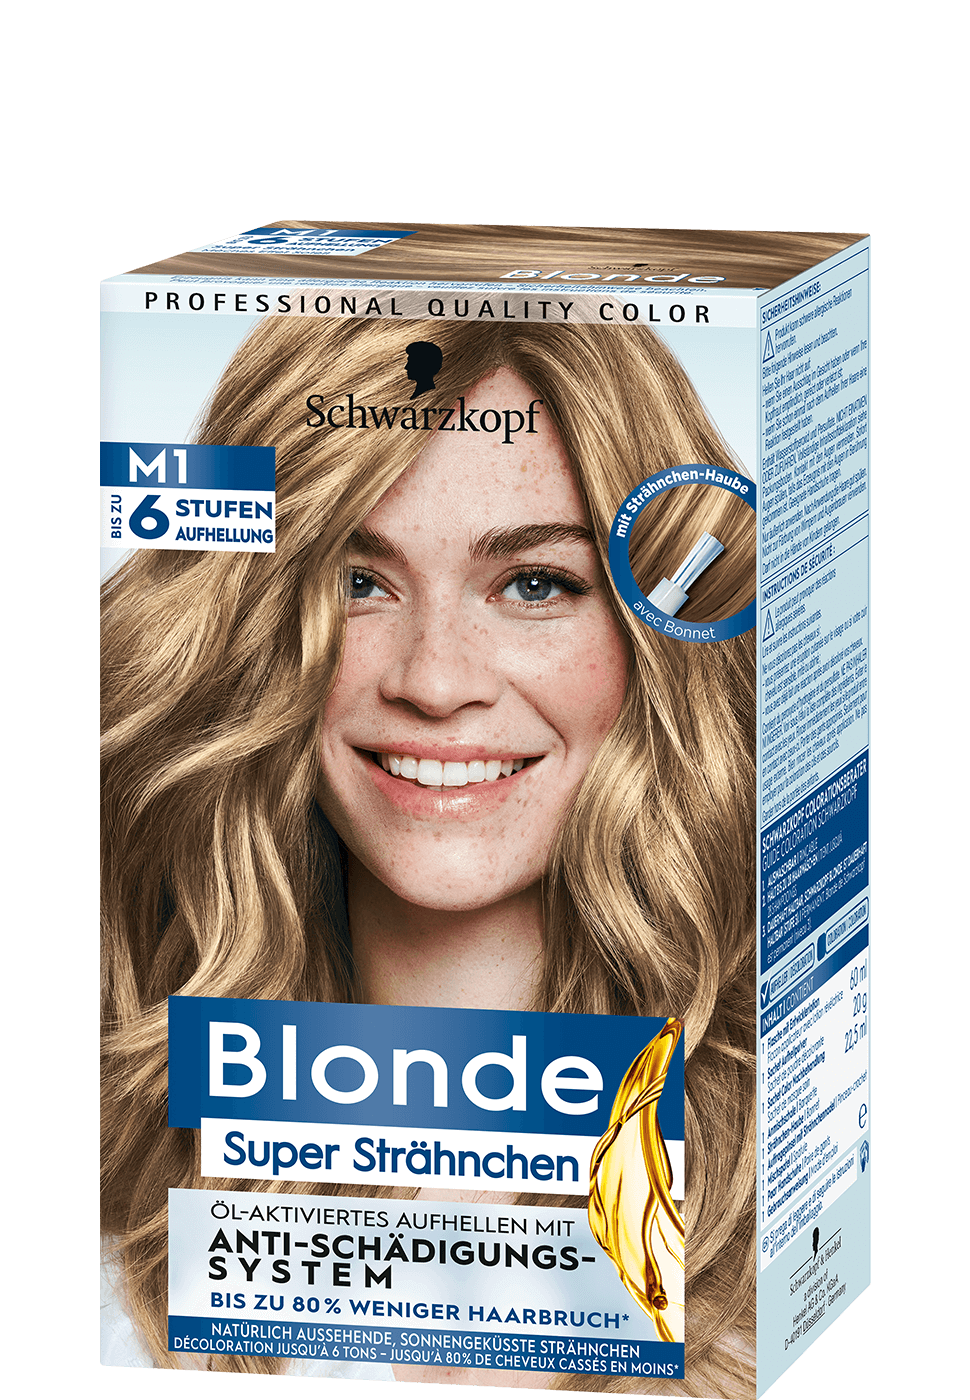 Dunkelblonde haare mit blonden strähnchen